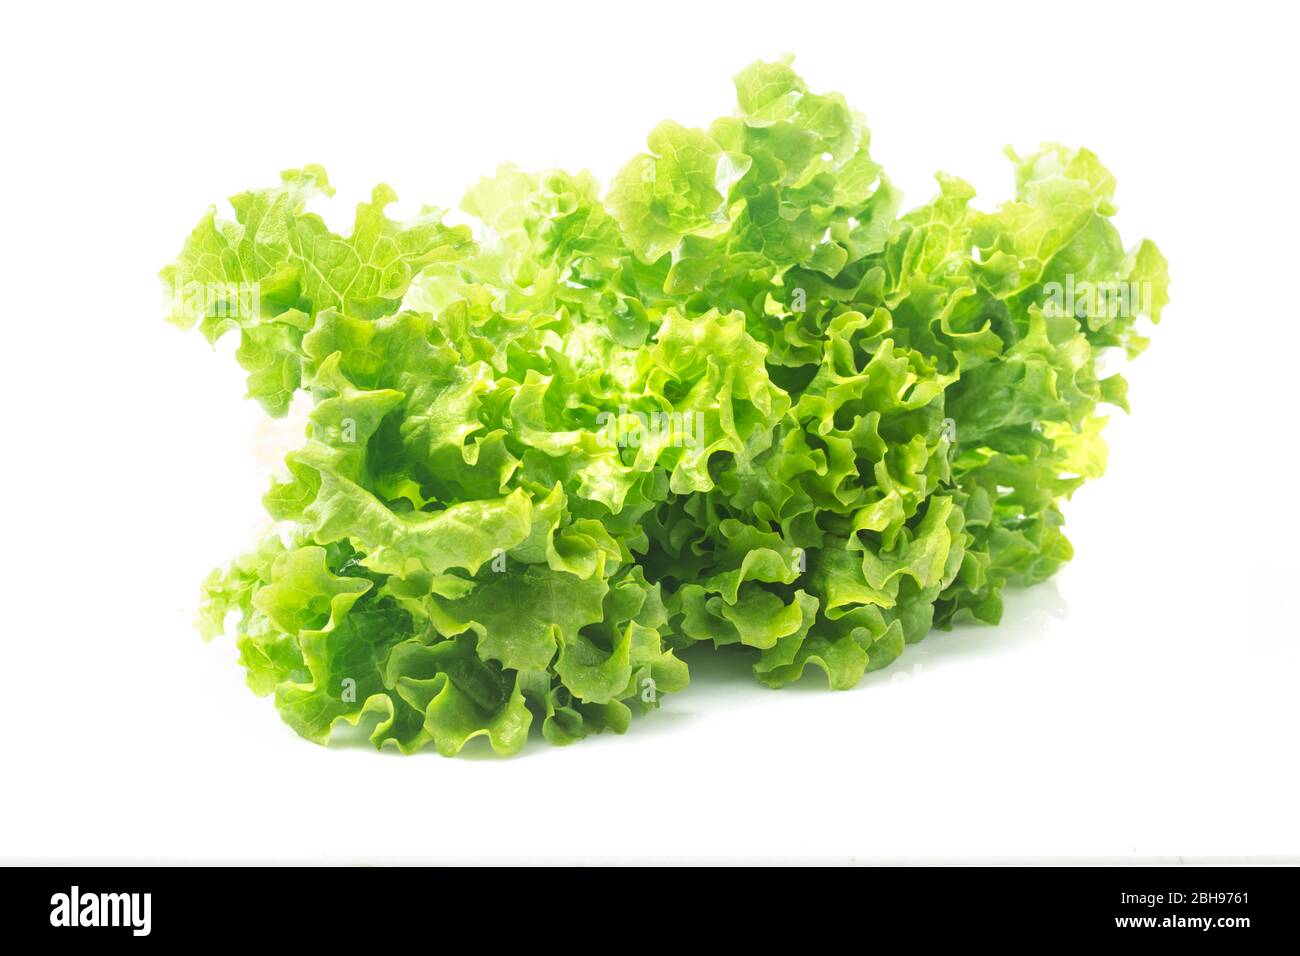 Salad leaf. Lettuce isolated on white background. Stock Photo